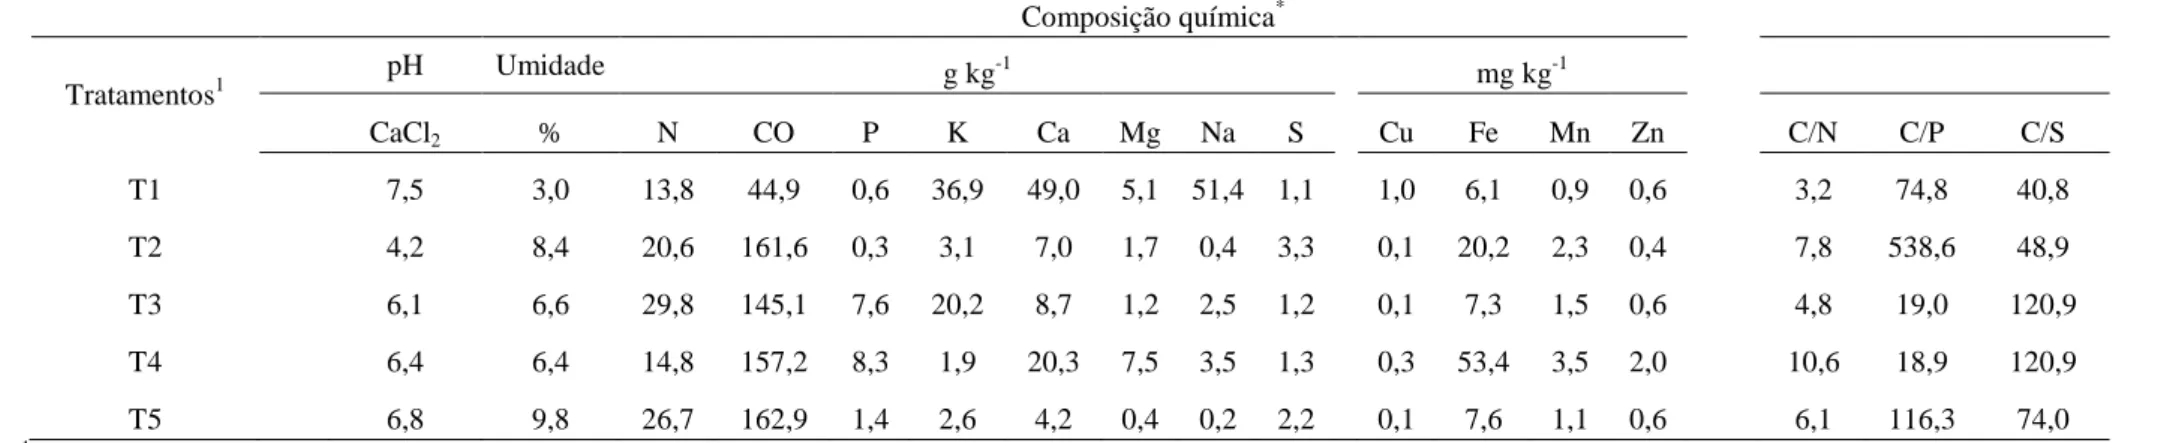 Tabela 2- Composição química dos resíduos orgânicos e do composto avaliados no estudo